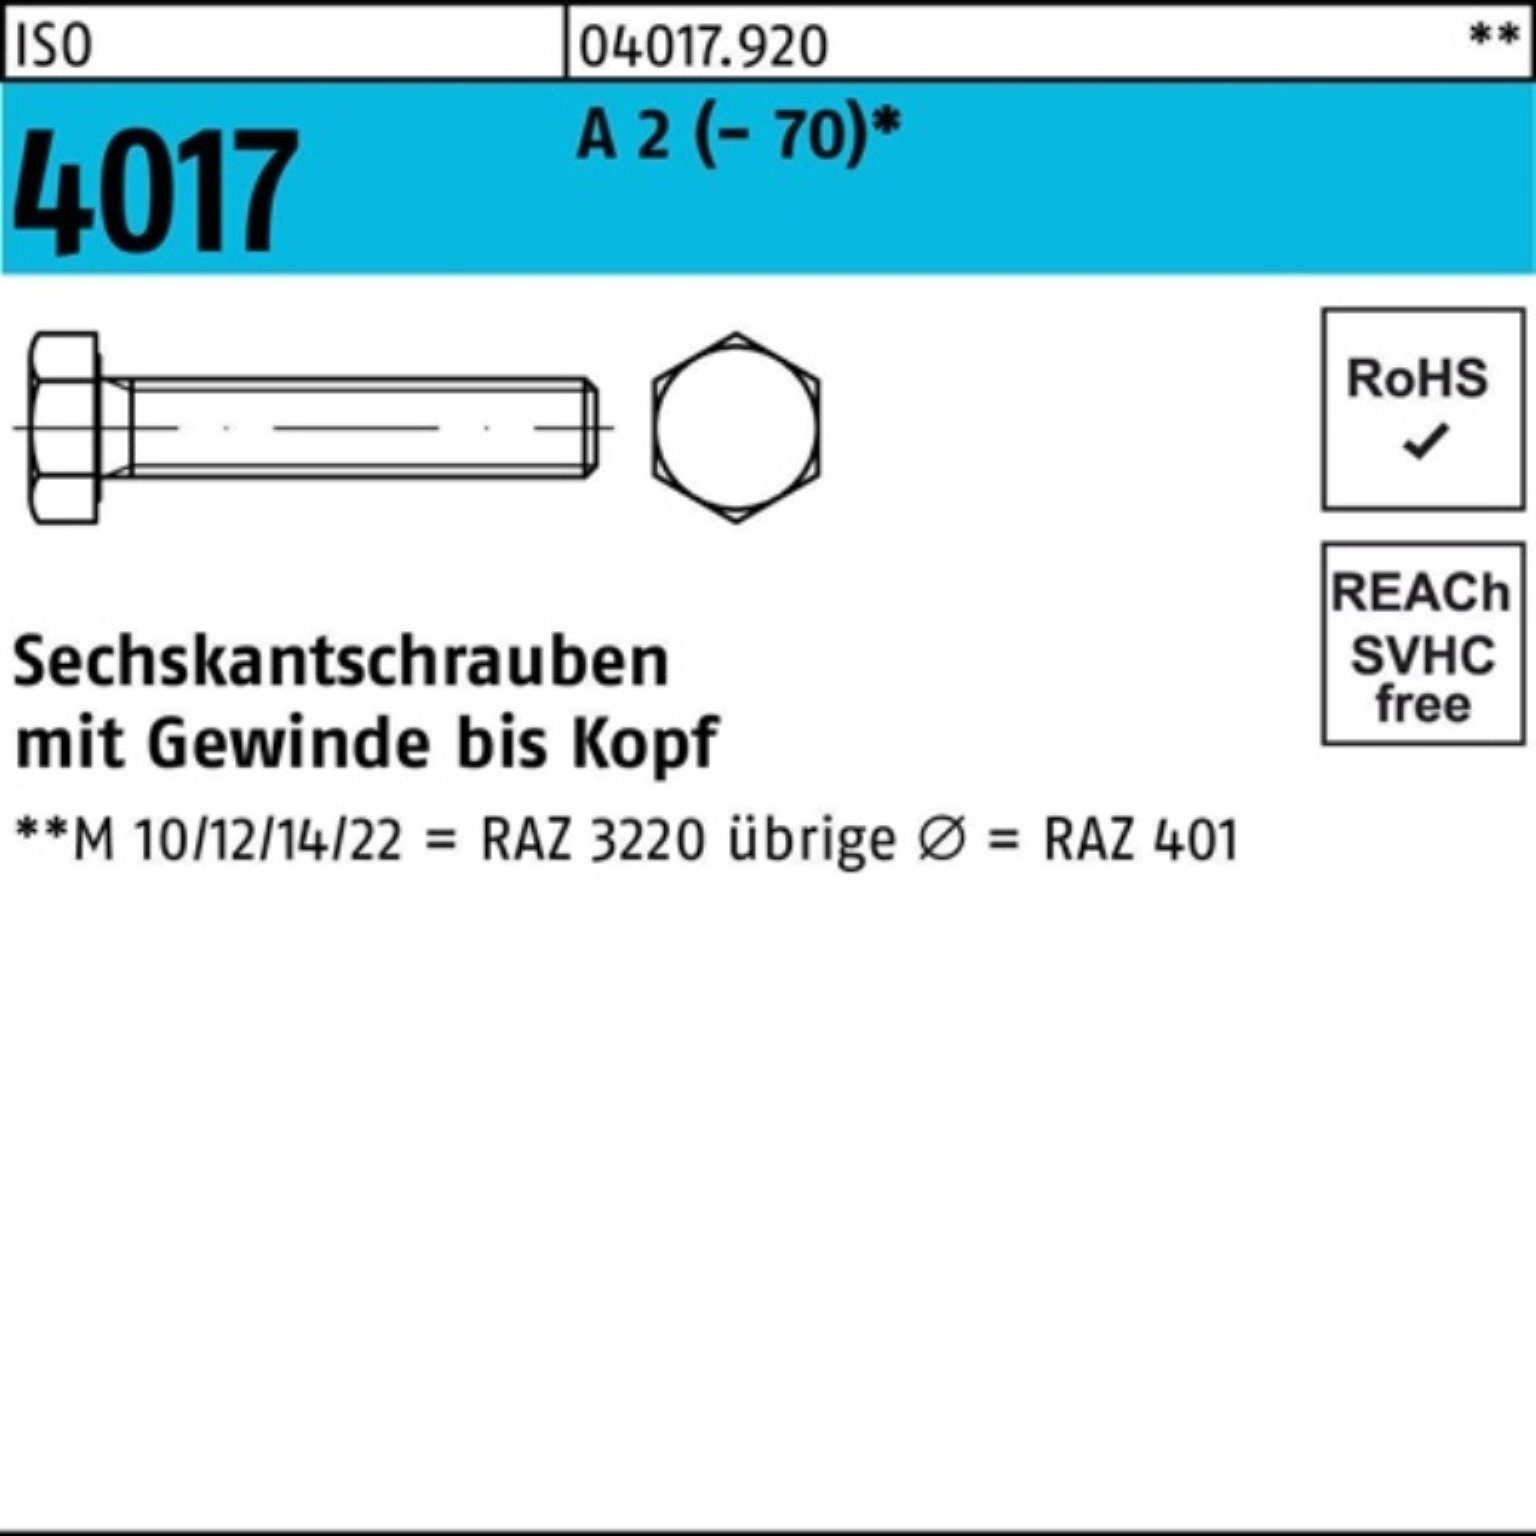 Bufab Sechskantschraube 100er Pack Sechskantschraube ISO 4017 VG M20x 95 A 2 (70) 10 Stück